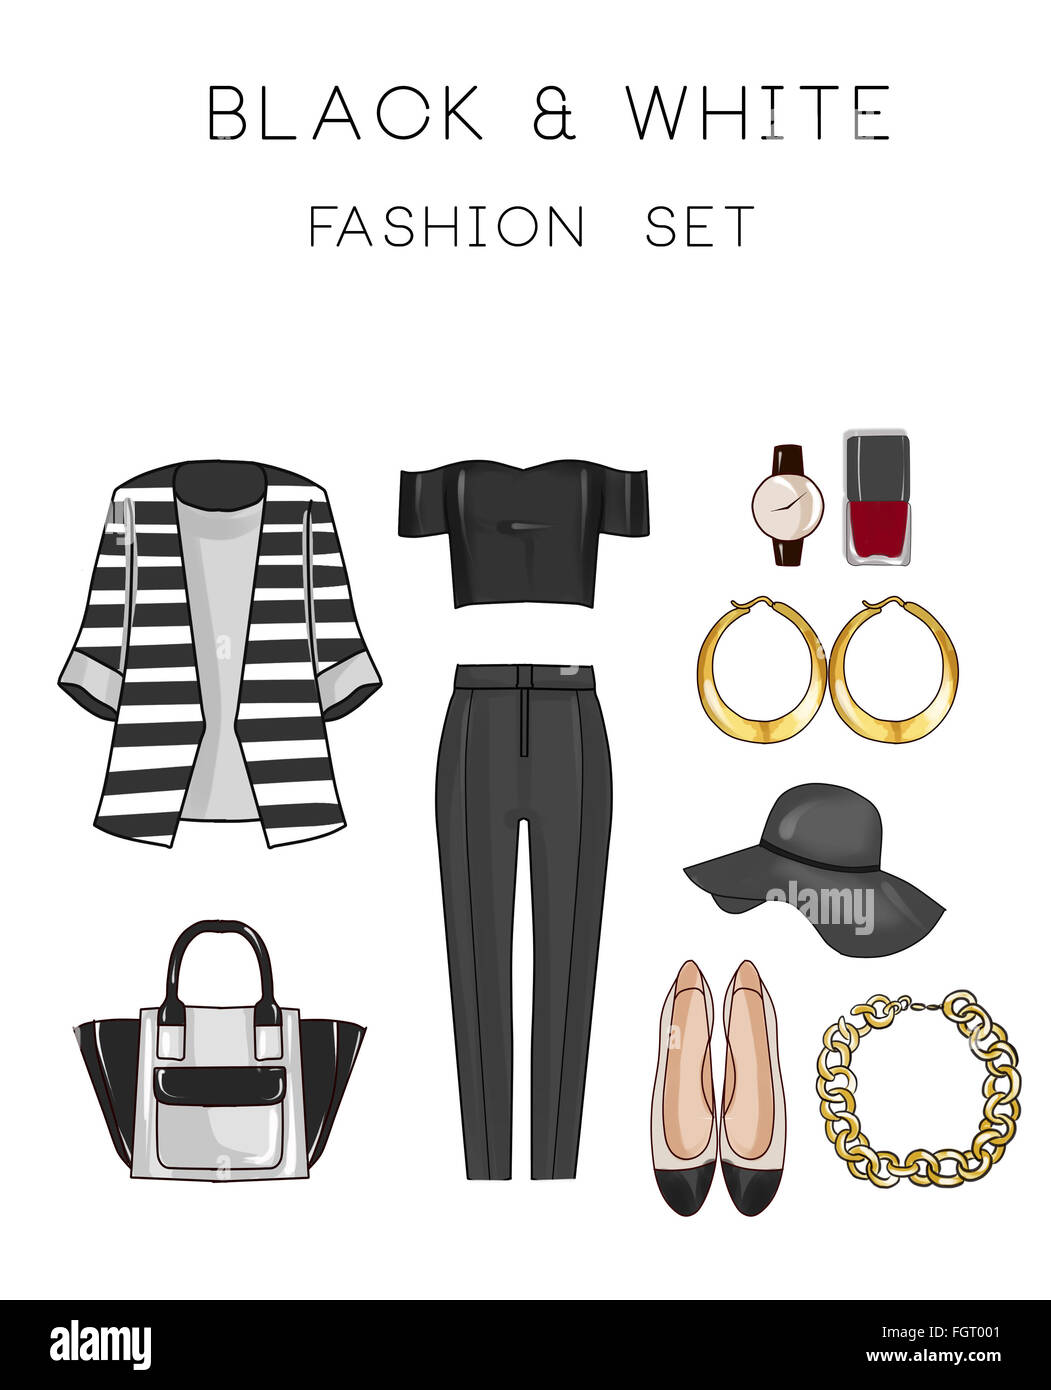 Mode-Set von Frau Kleidung und Accessoires - Black And White Outfit - Hose,  Top, flache Schuhe, Schmuck, Tasche Stockfotografie - Alamy